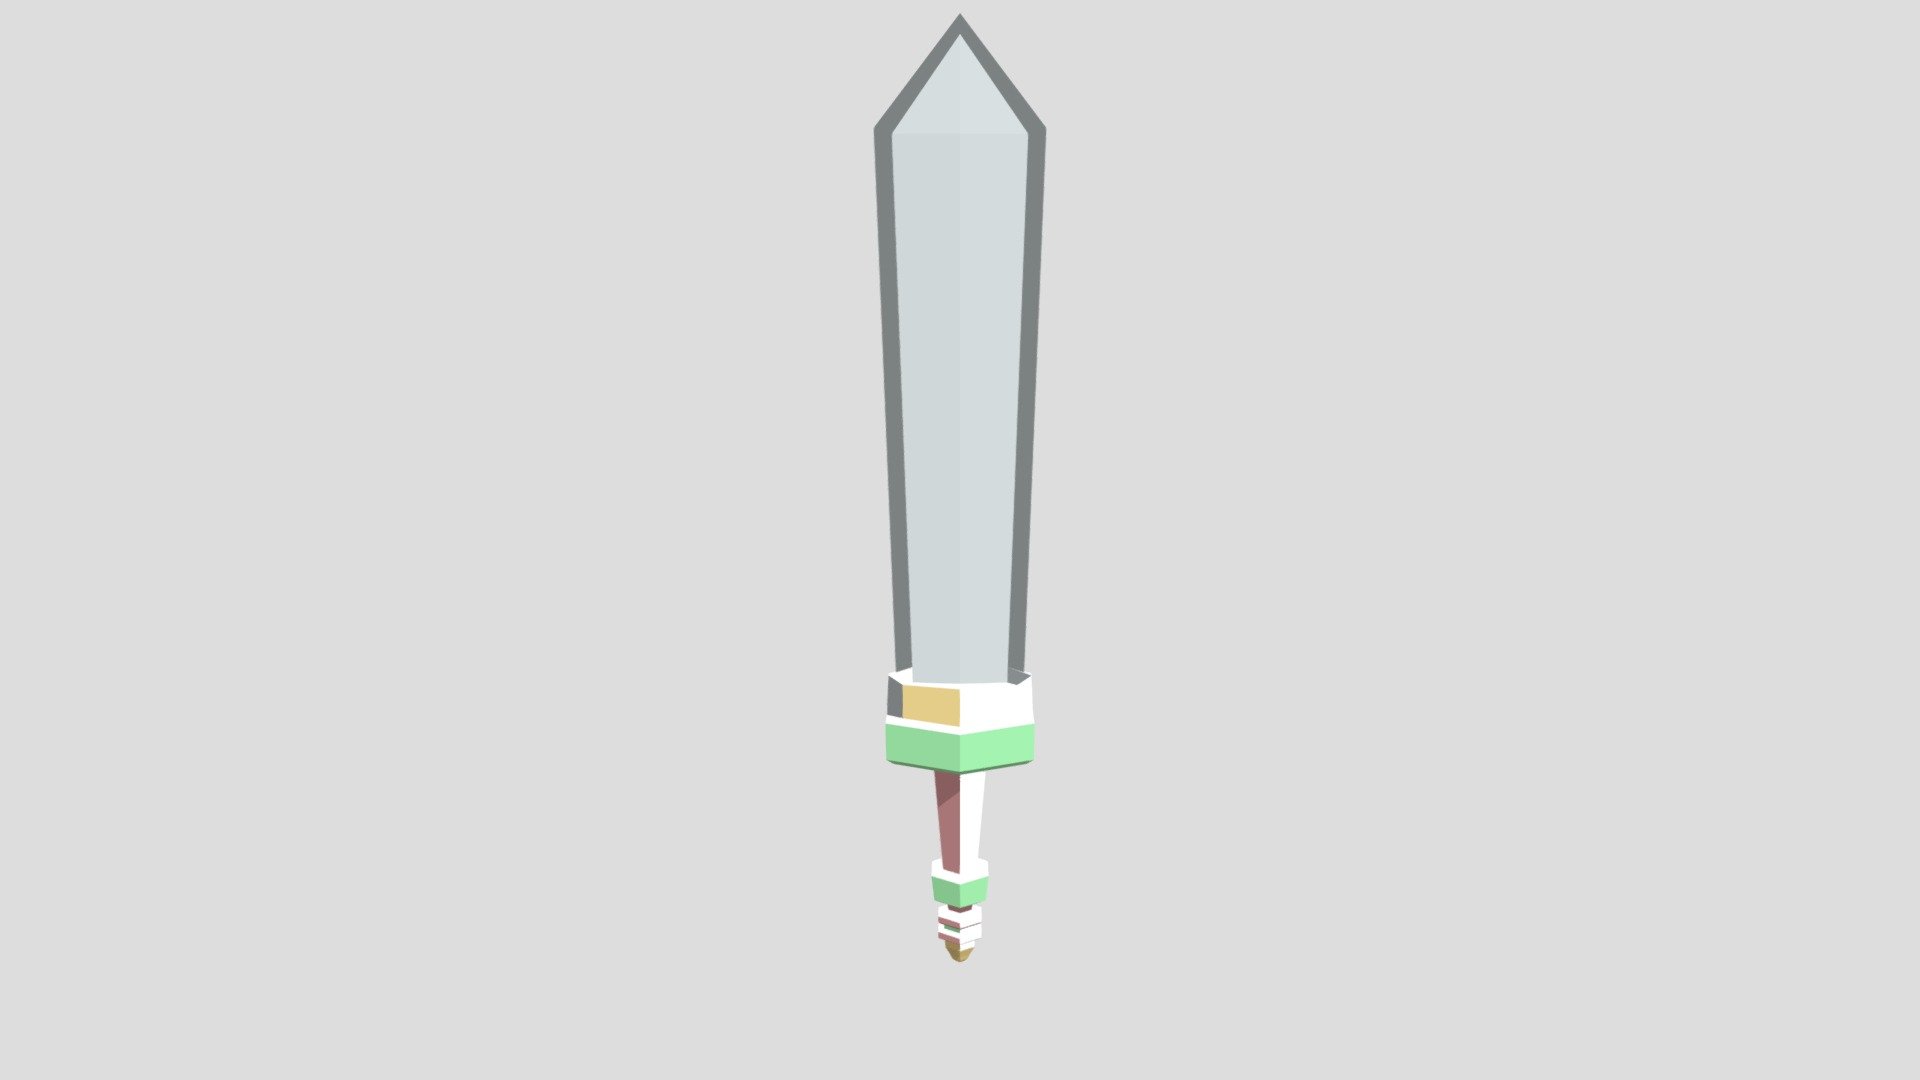 Sword 01 3d Model By Ccarl [2f79b60] Sketchfab